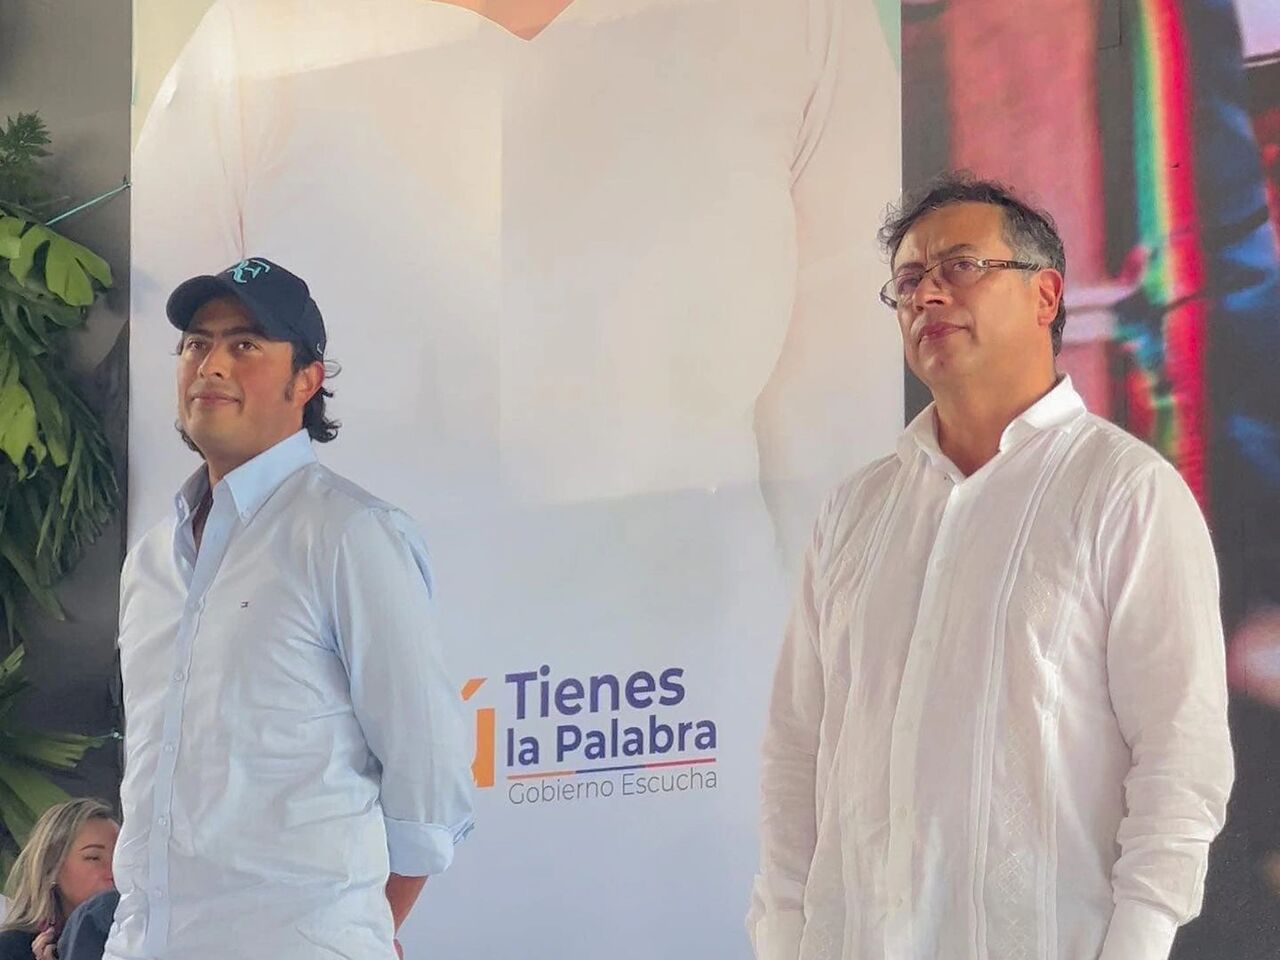 پسر رئیس جمهوری کلمبیا به اتهام پولشویی بازداشت شد